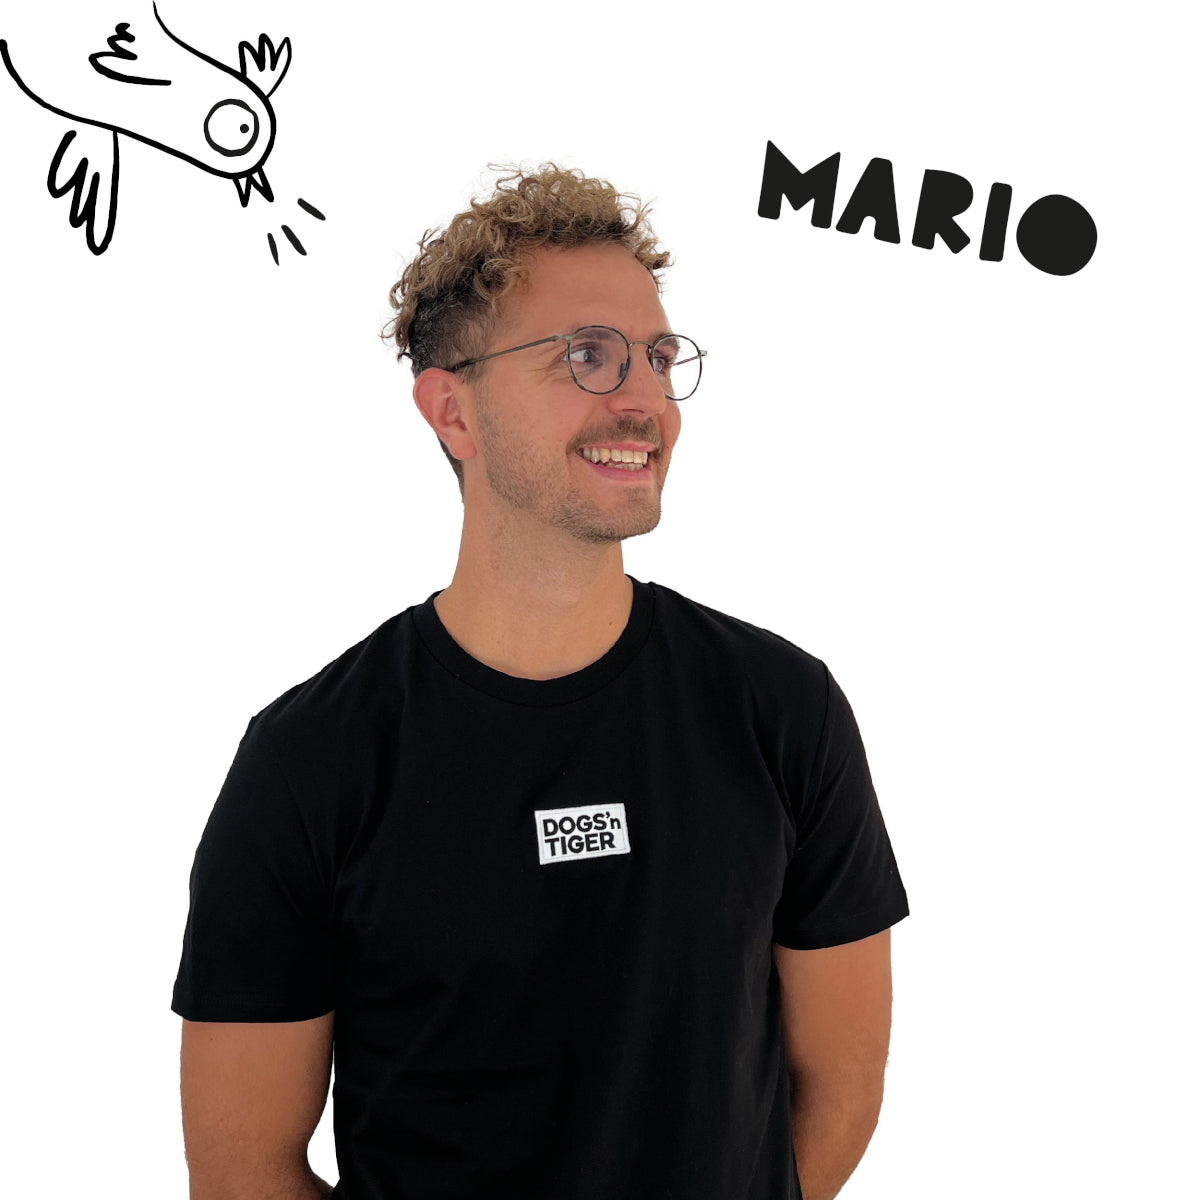 Foto von Mario in schwarzem Shirt mit Dogs'n Tiger Logo